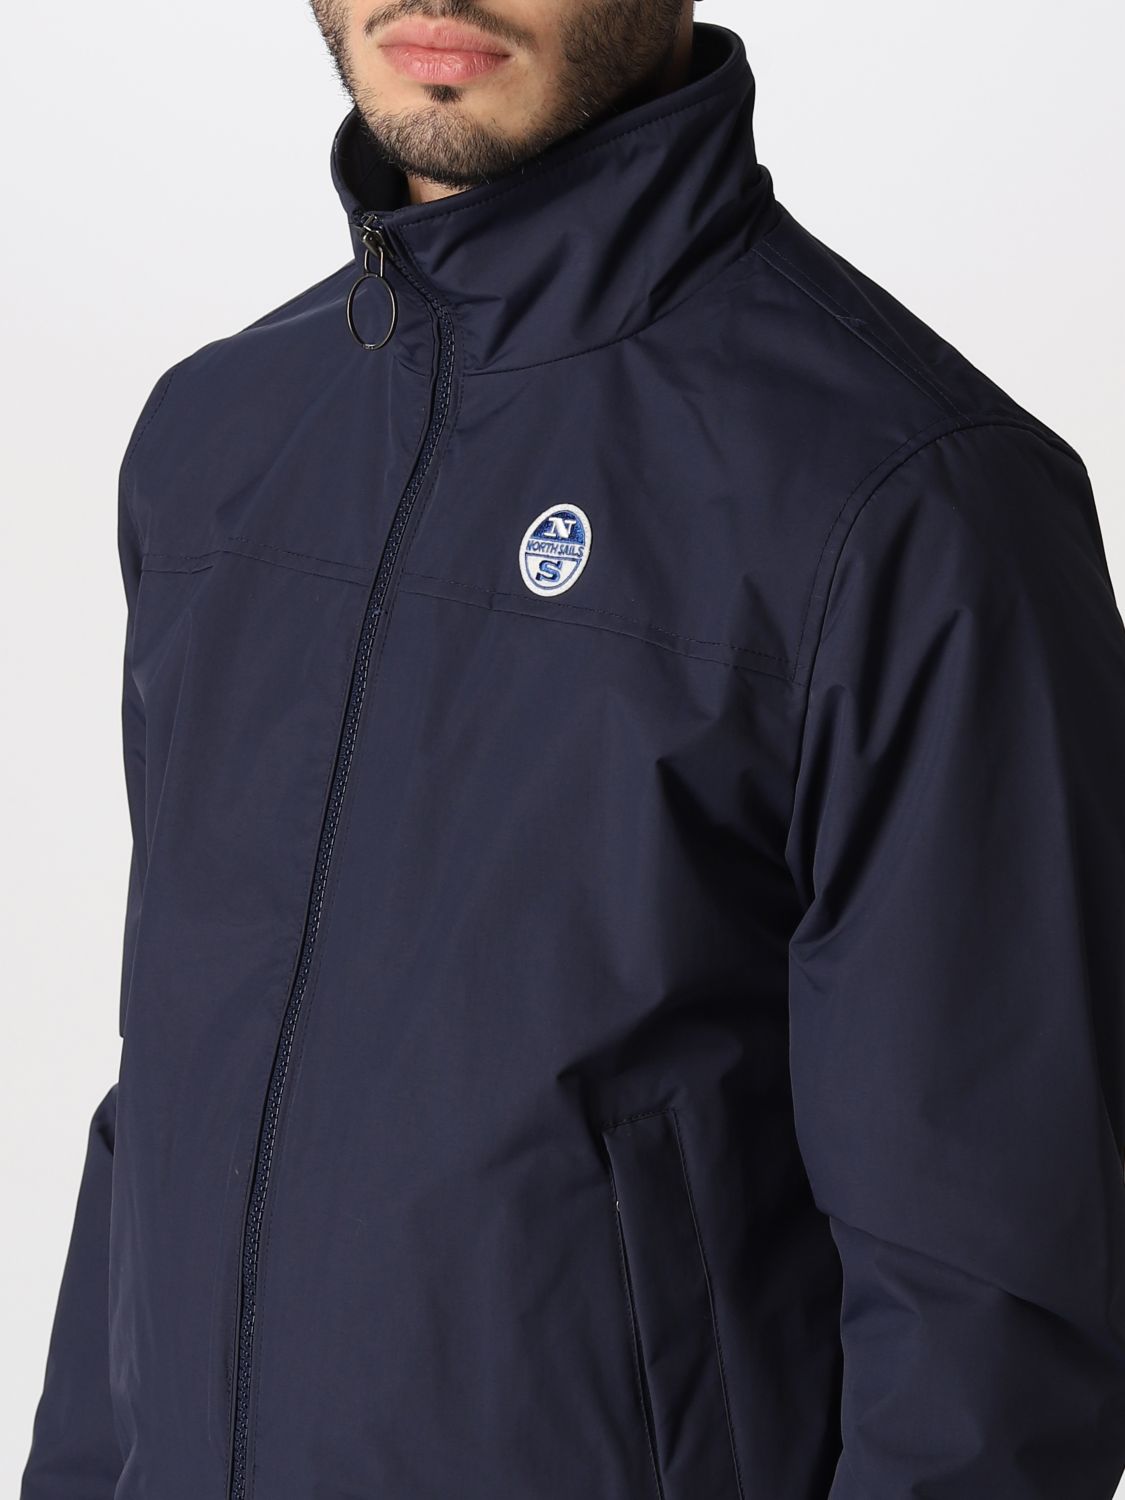 Jacket North Sails: North Sails jacket for men blue 4